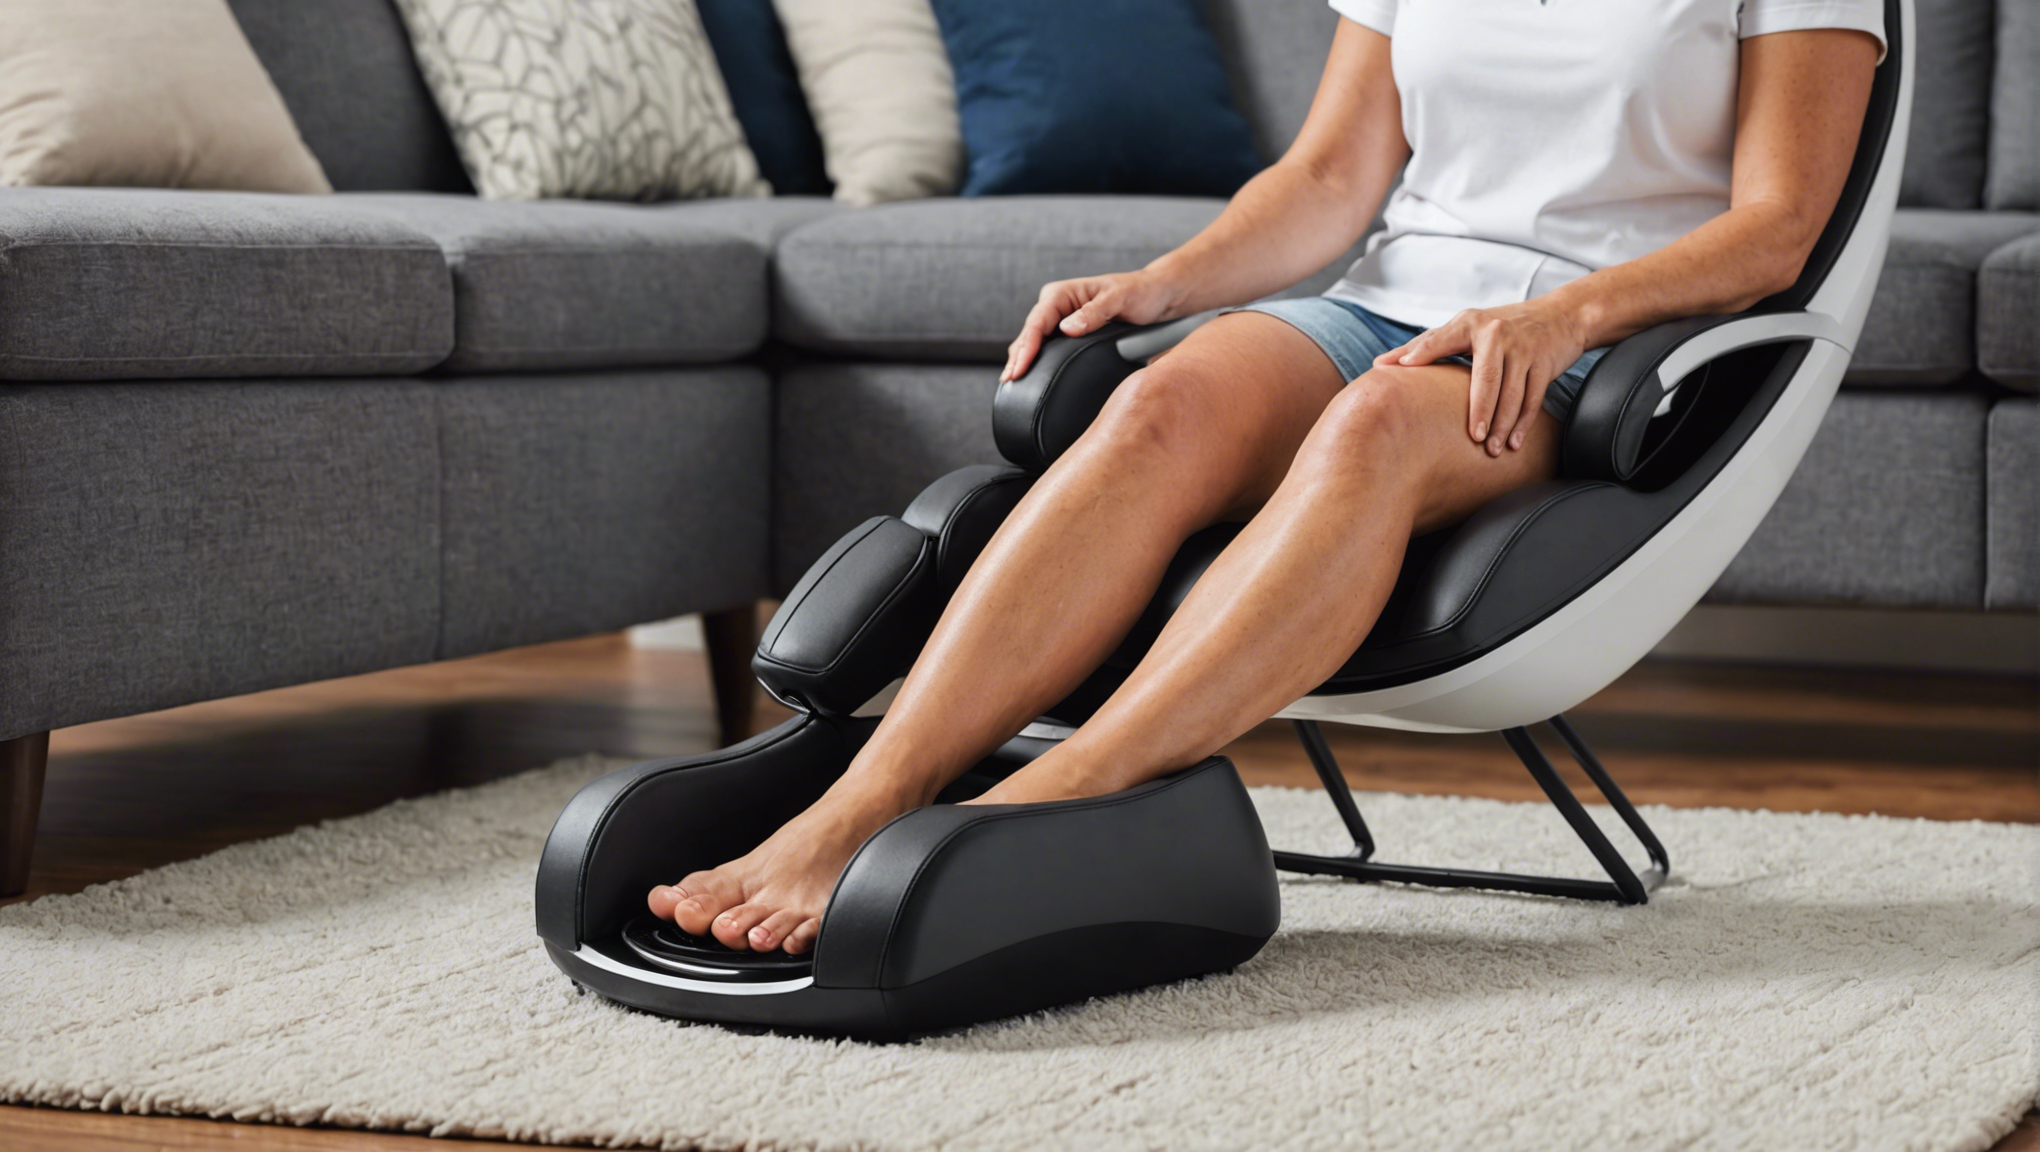 découvrez le meilleur appareil de massage pour les pieds pour soulager la douleur et la fatigue. profitez d'un massage relaxant à domicile avec notre sélection haut de gamme.